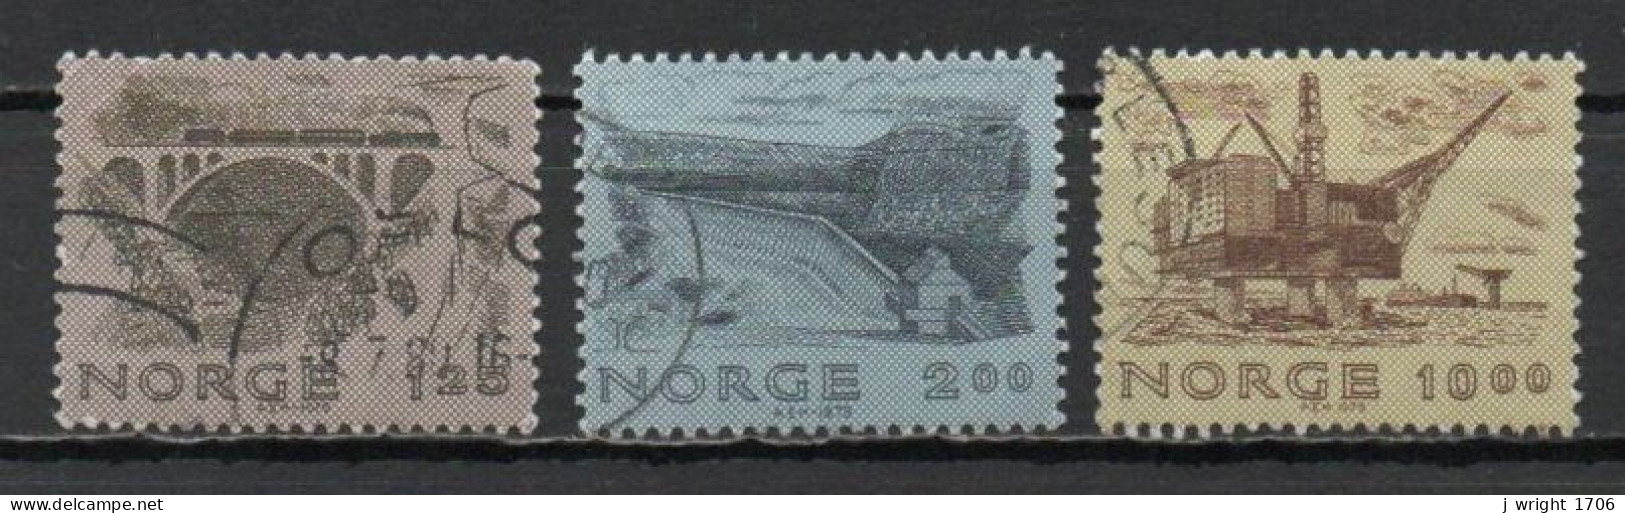 Norway, 1979, Norwegian Engineering, Set, USED - Oblitérés